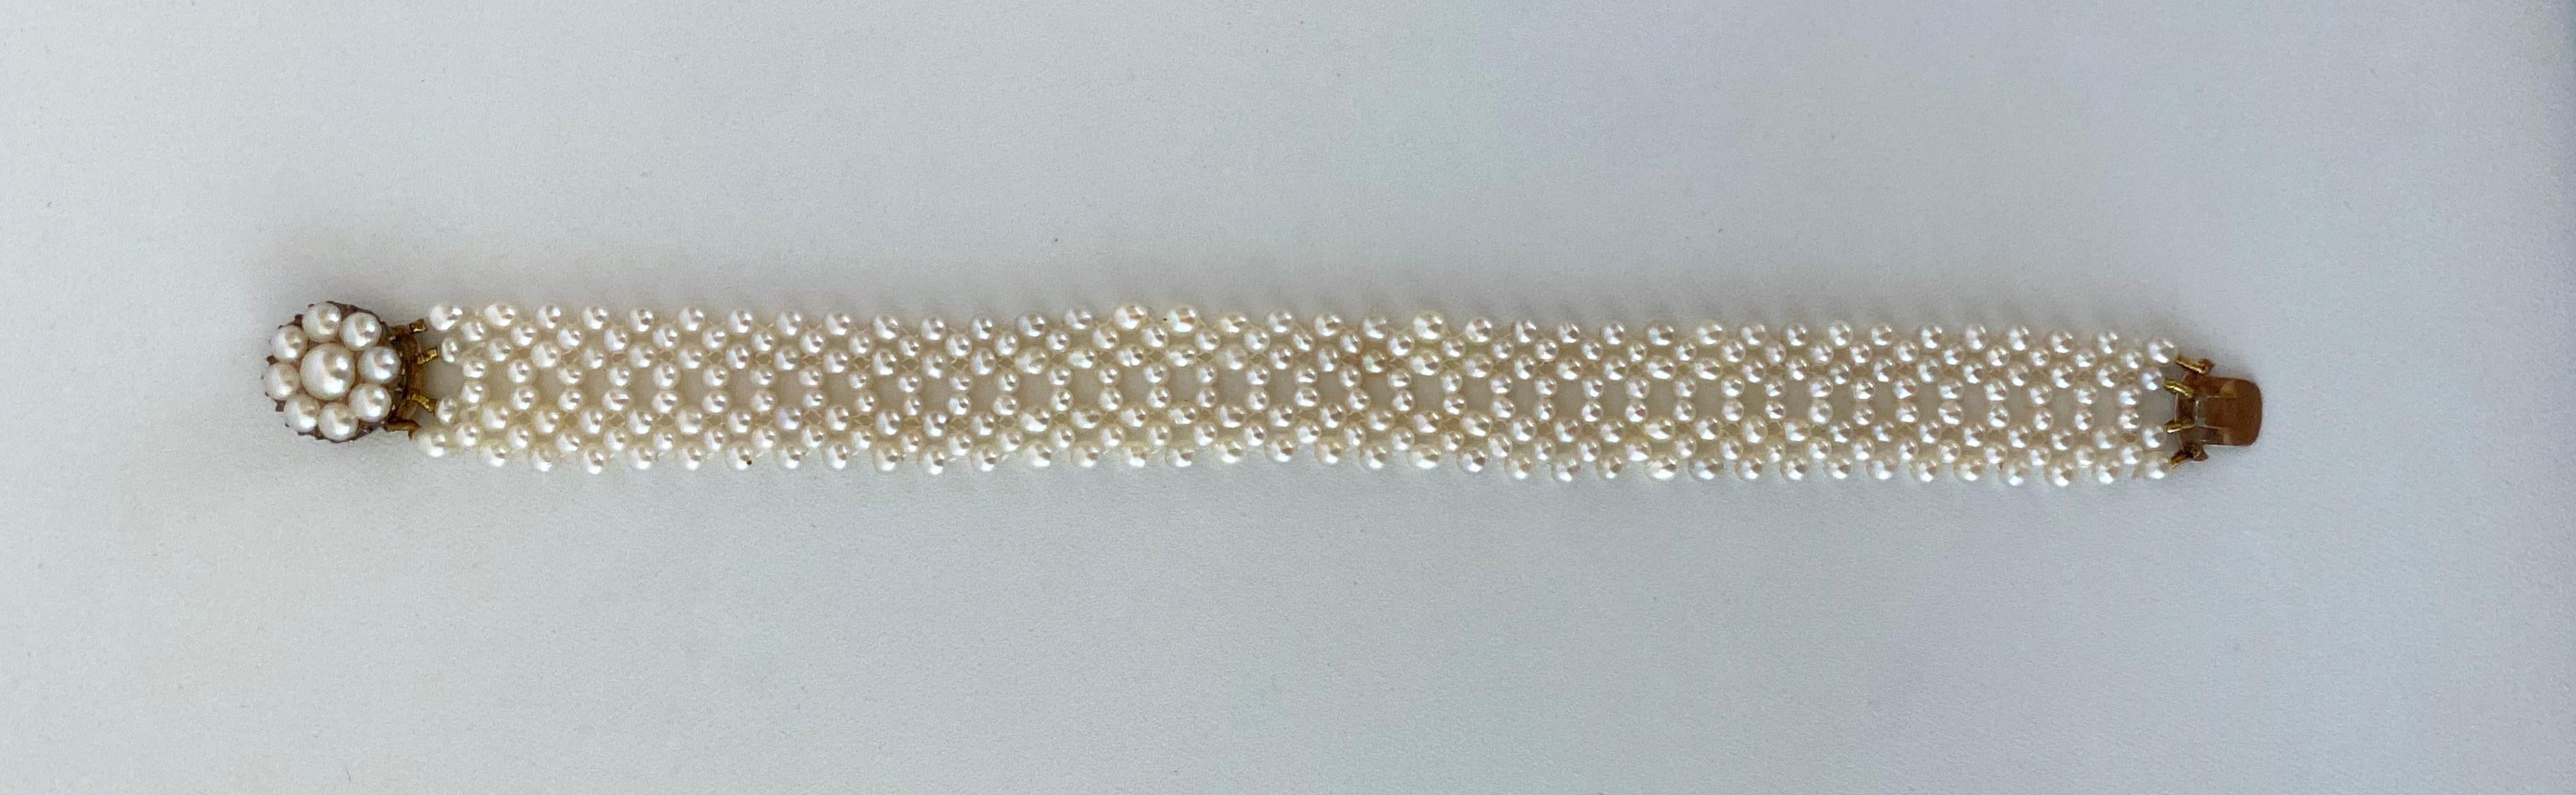 luster lace bracelets